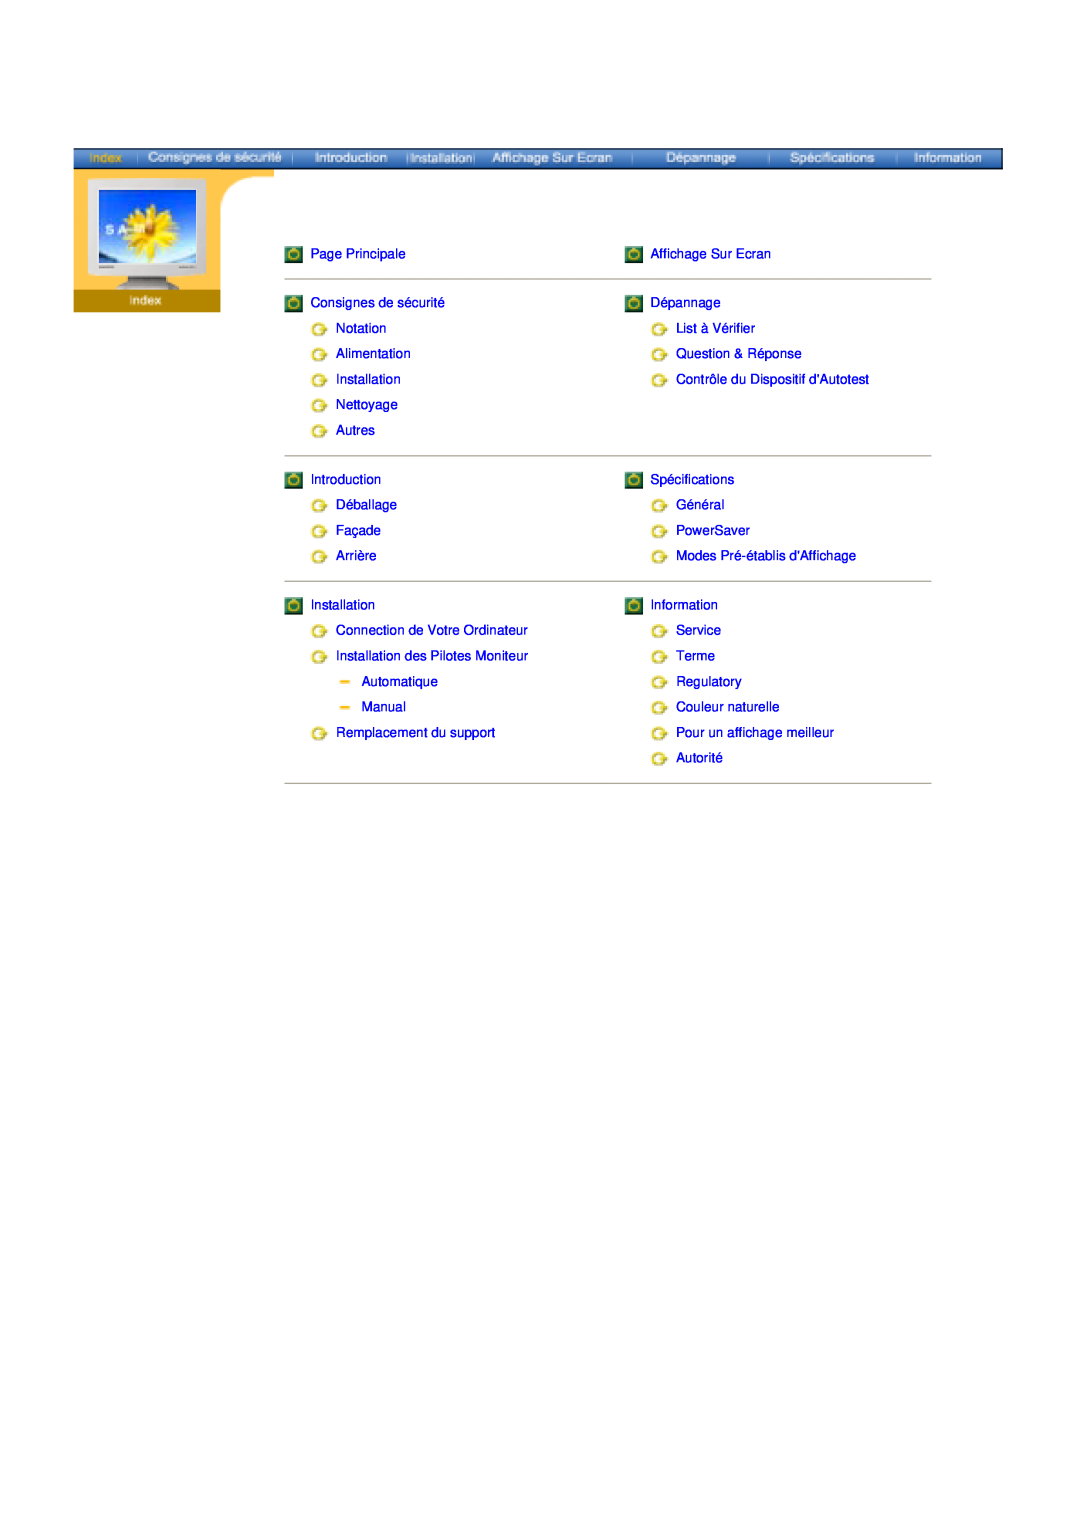 Samsung 153S Page Principale, Affichage Sur Ecran, Consignes de sécurité, Dépannage, Notation, List à Vérifier, Nettoyage 